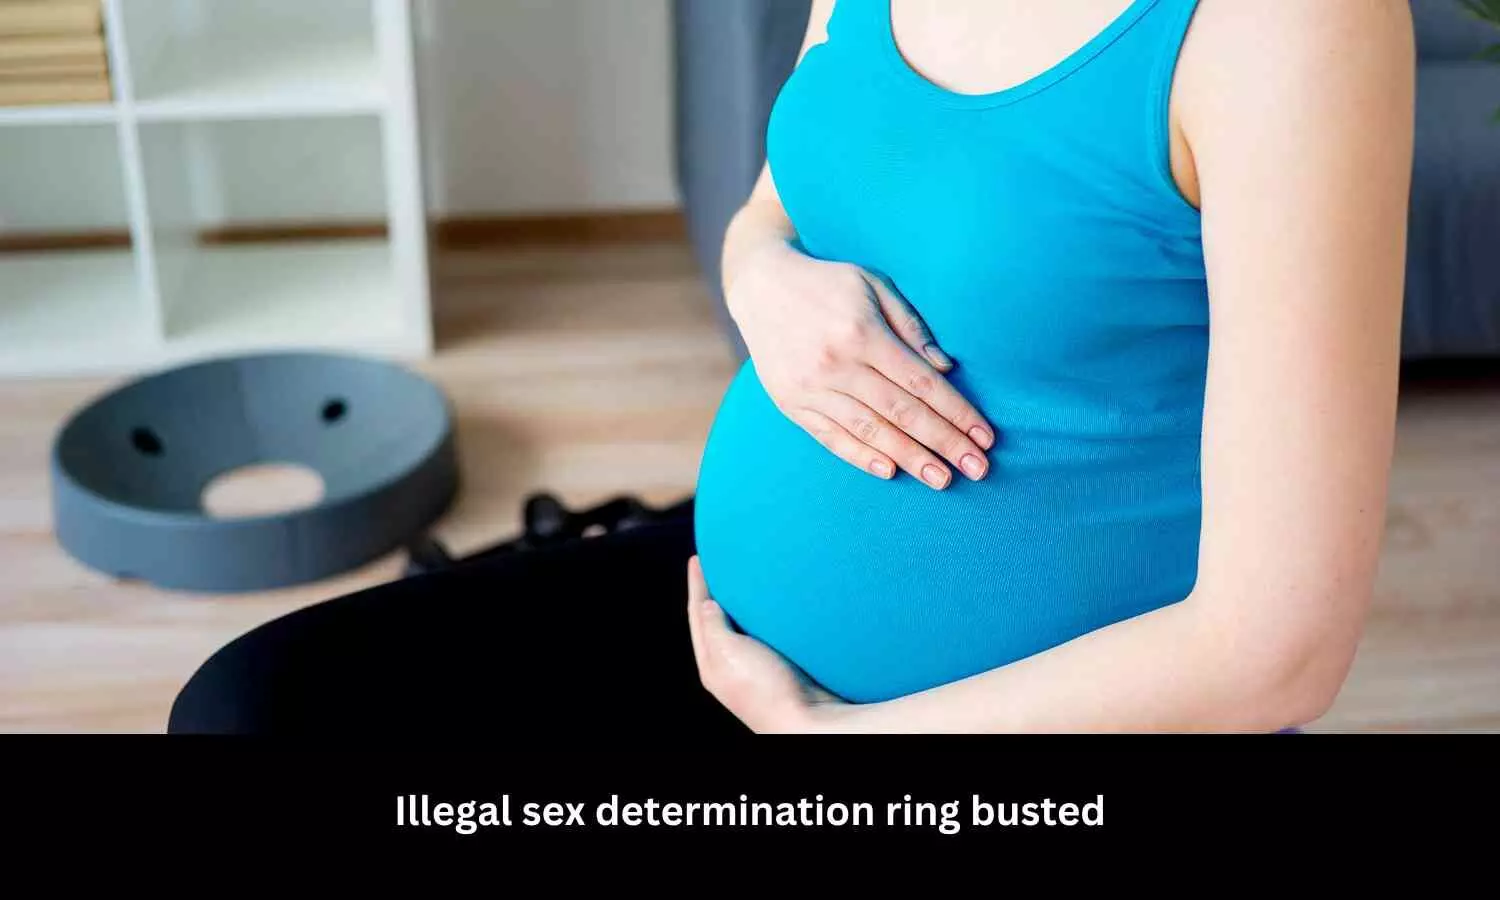 Pre-natal sex determination racket exposed,  3 held